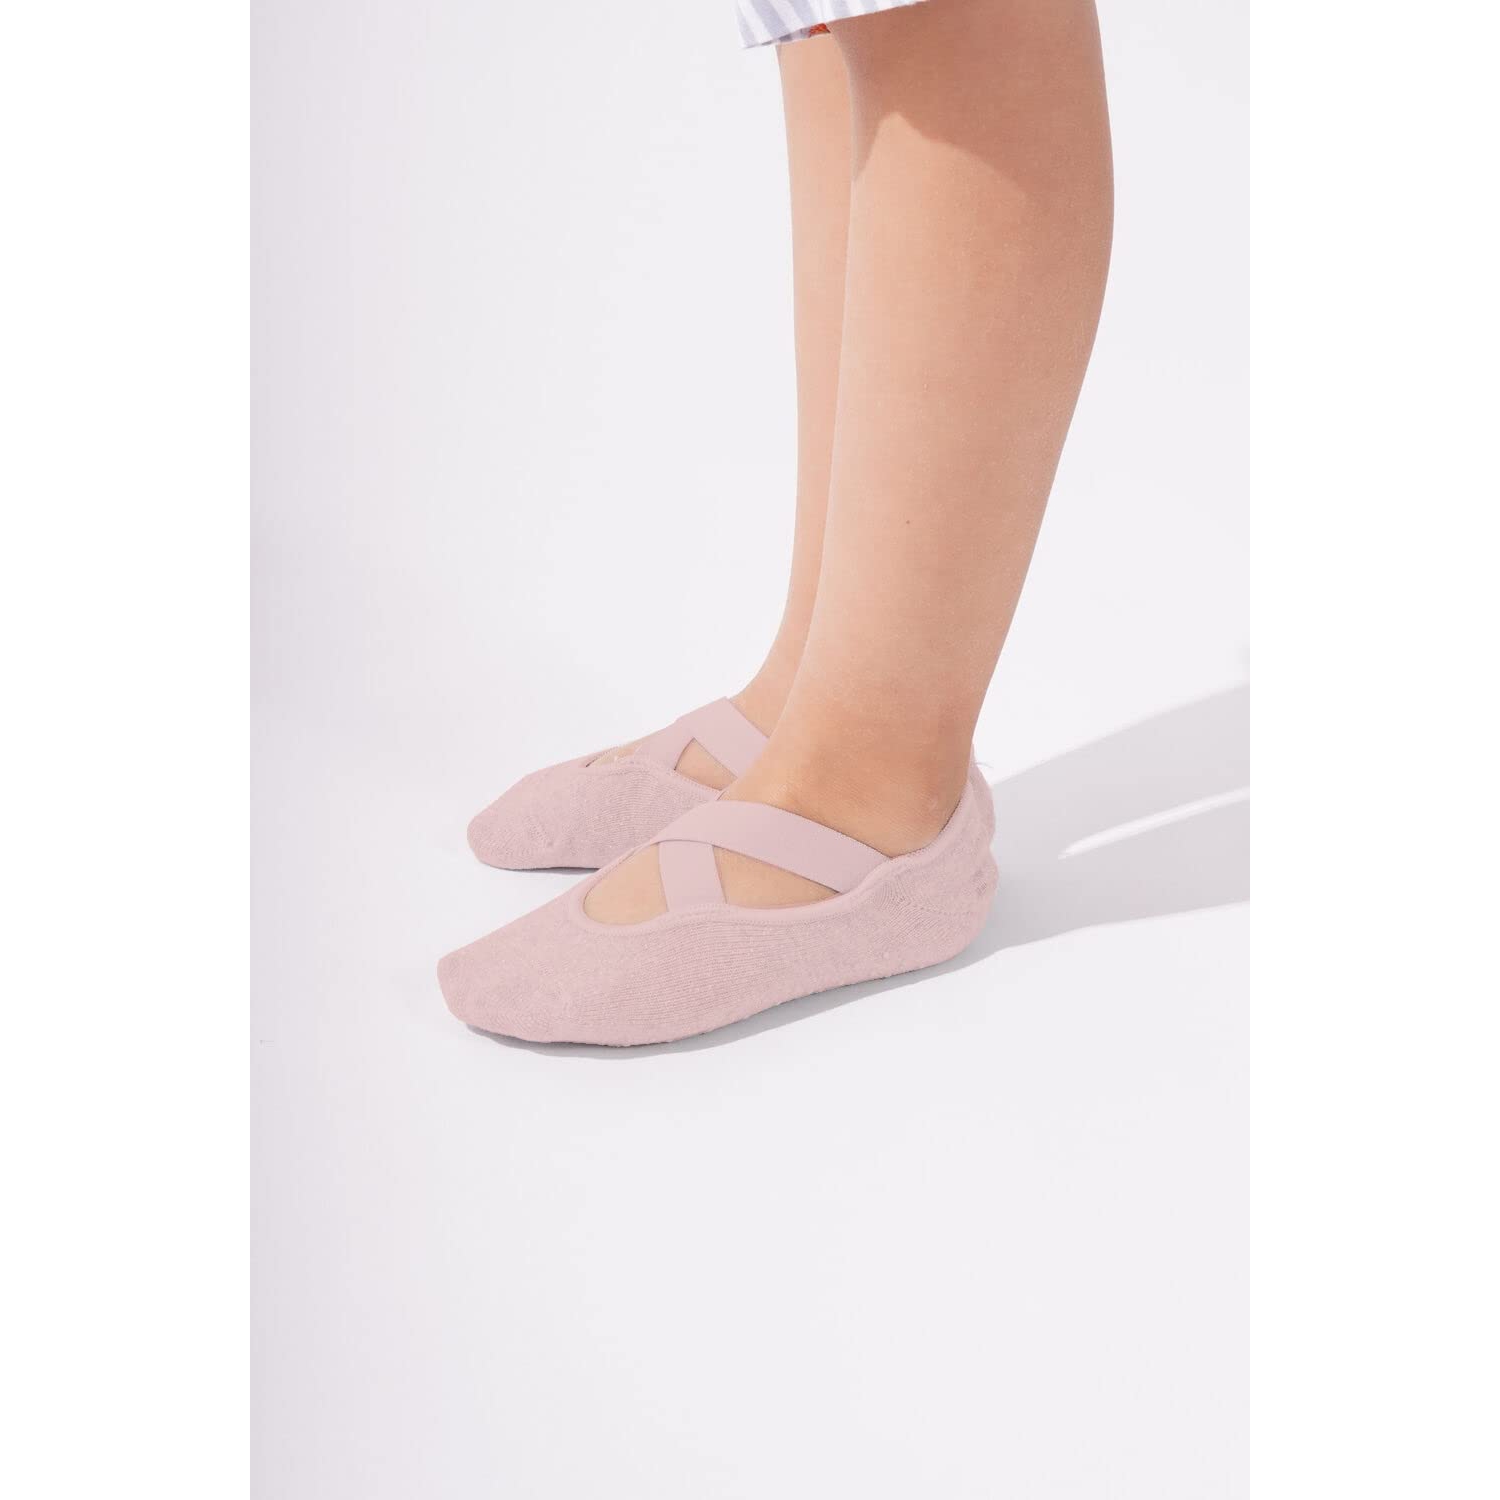 Non Slip Yoga Socks for Girls 5-8 Years Old